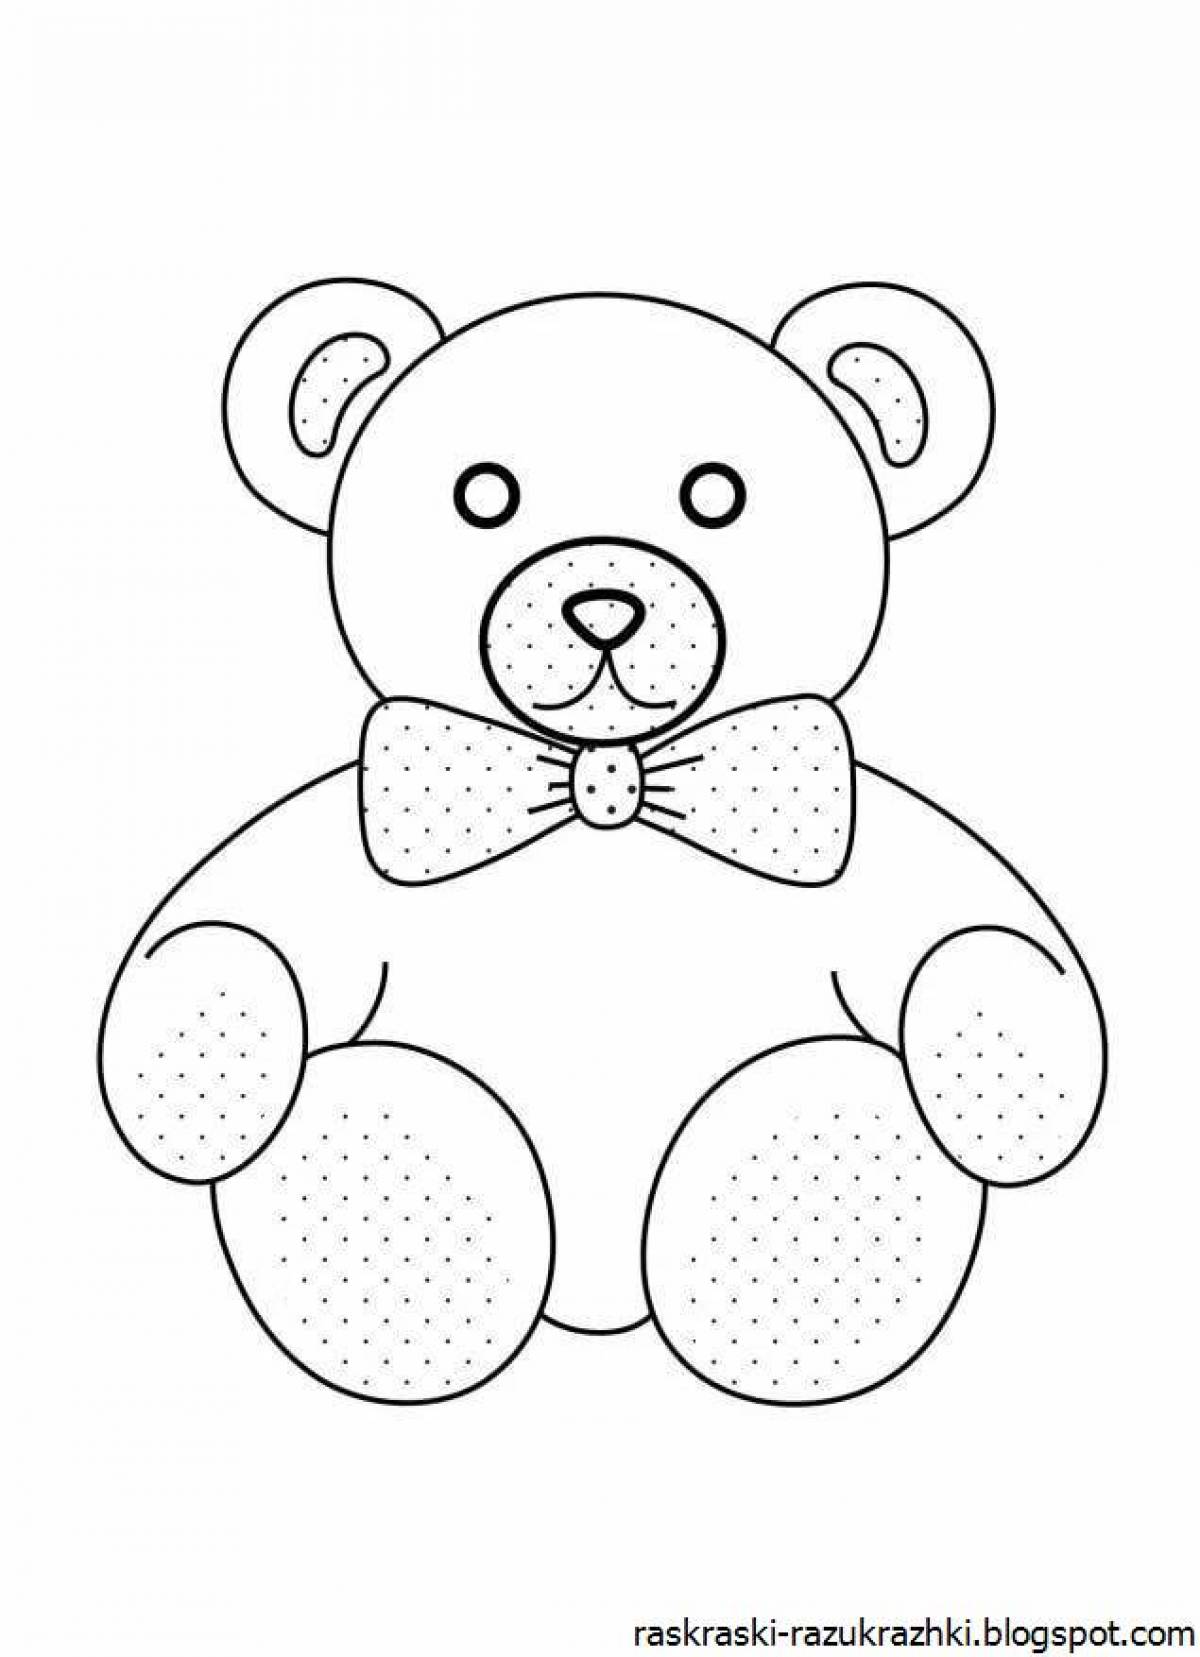 Раскраска медведь для детей 2 3 лет. Раскраска. Медвежонок. Раскраска "мишки". Мишка раскраска для детей. Раскраска мишка для детей 3-4 лет.